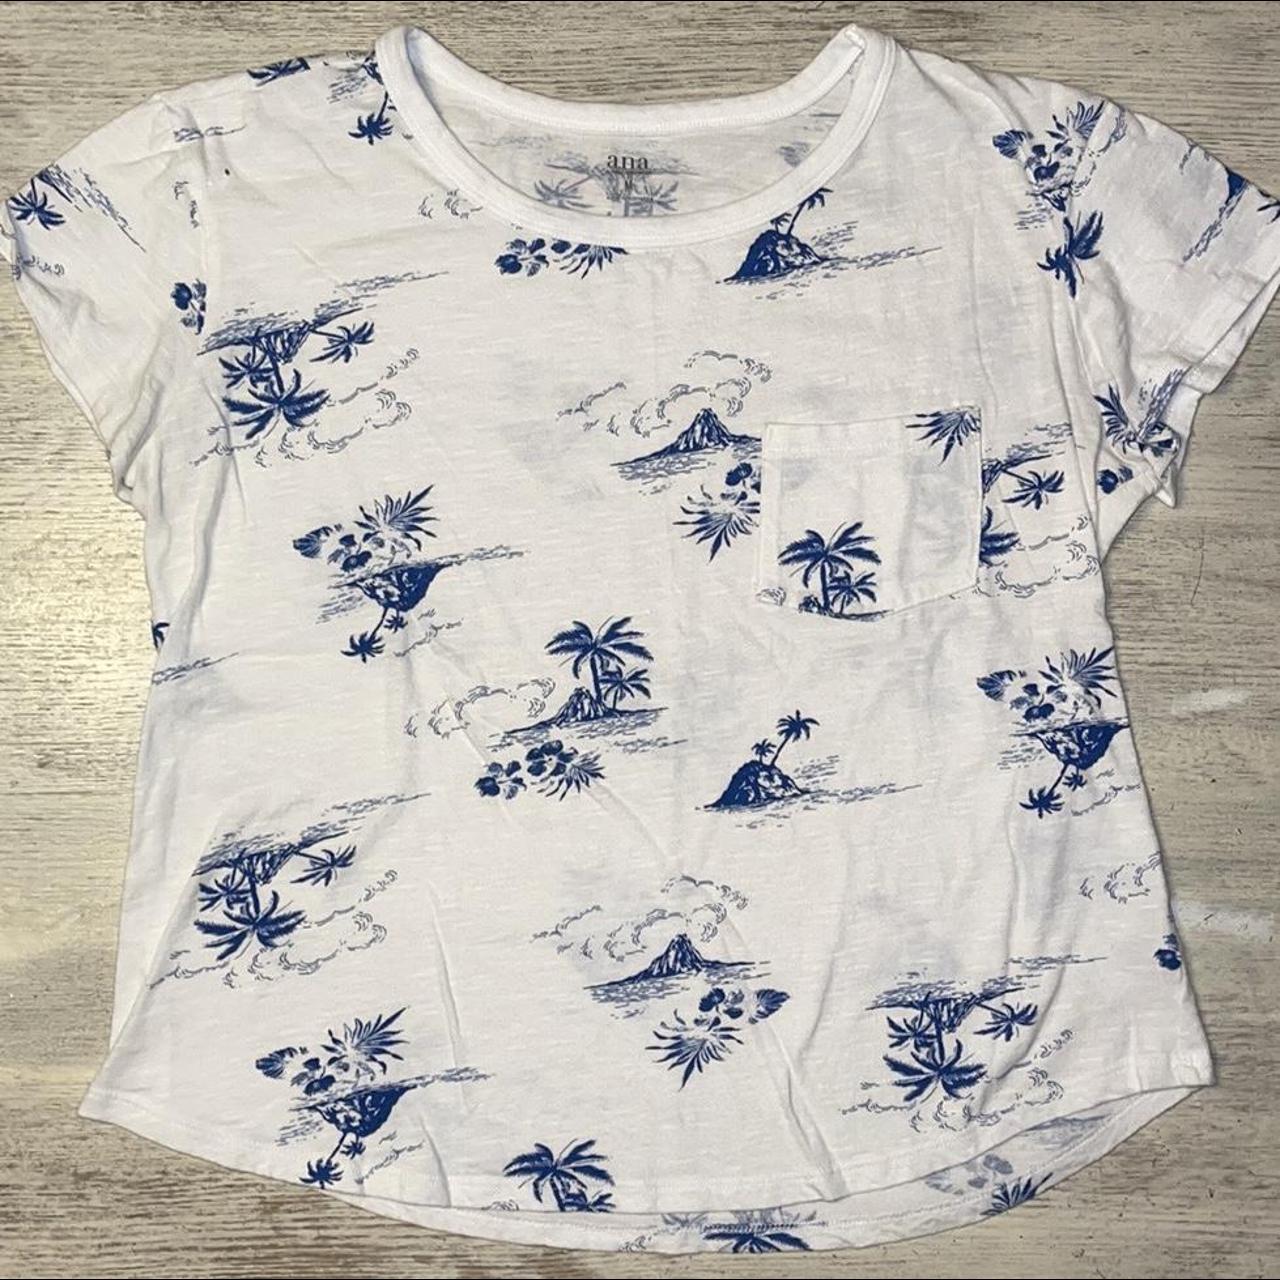 Kohl's Women's White and Blue T-shirt | Depop